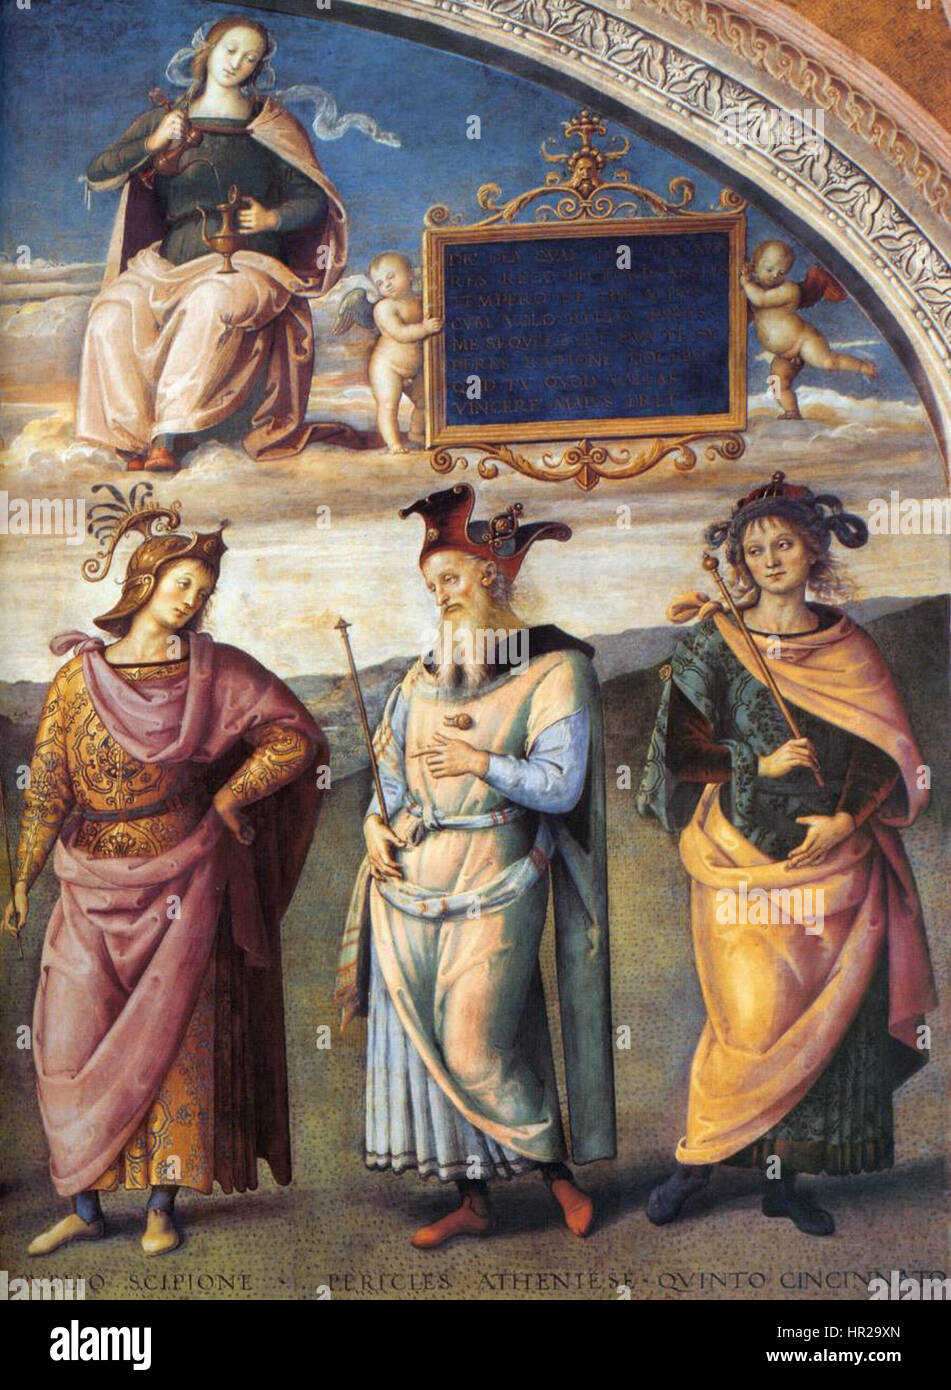 Pietro Perugino - hommes célèbres de l'Antiquité (détail) - WGA17238 Banque D'Images